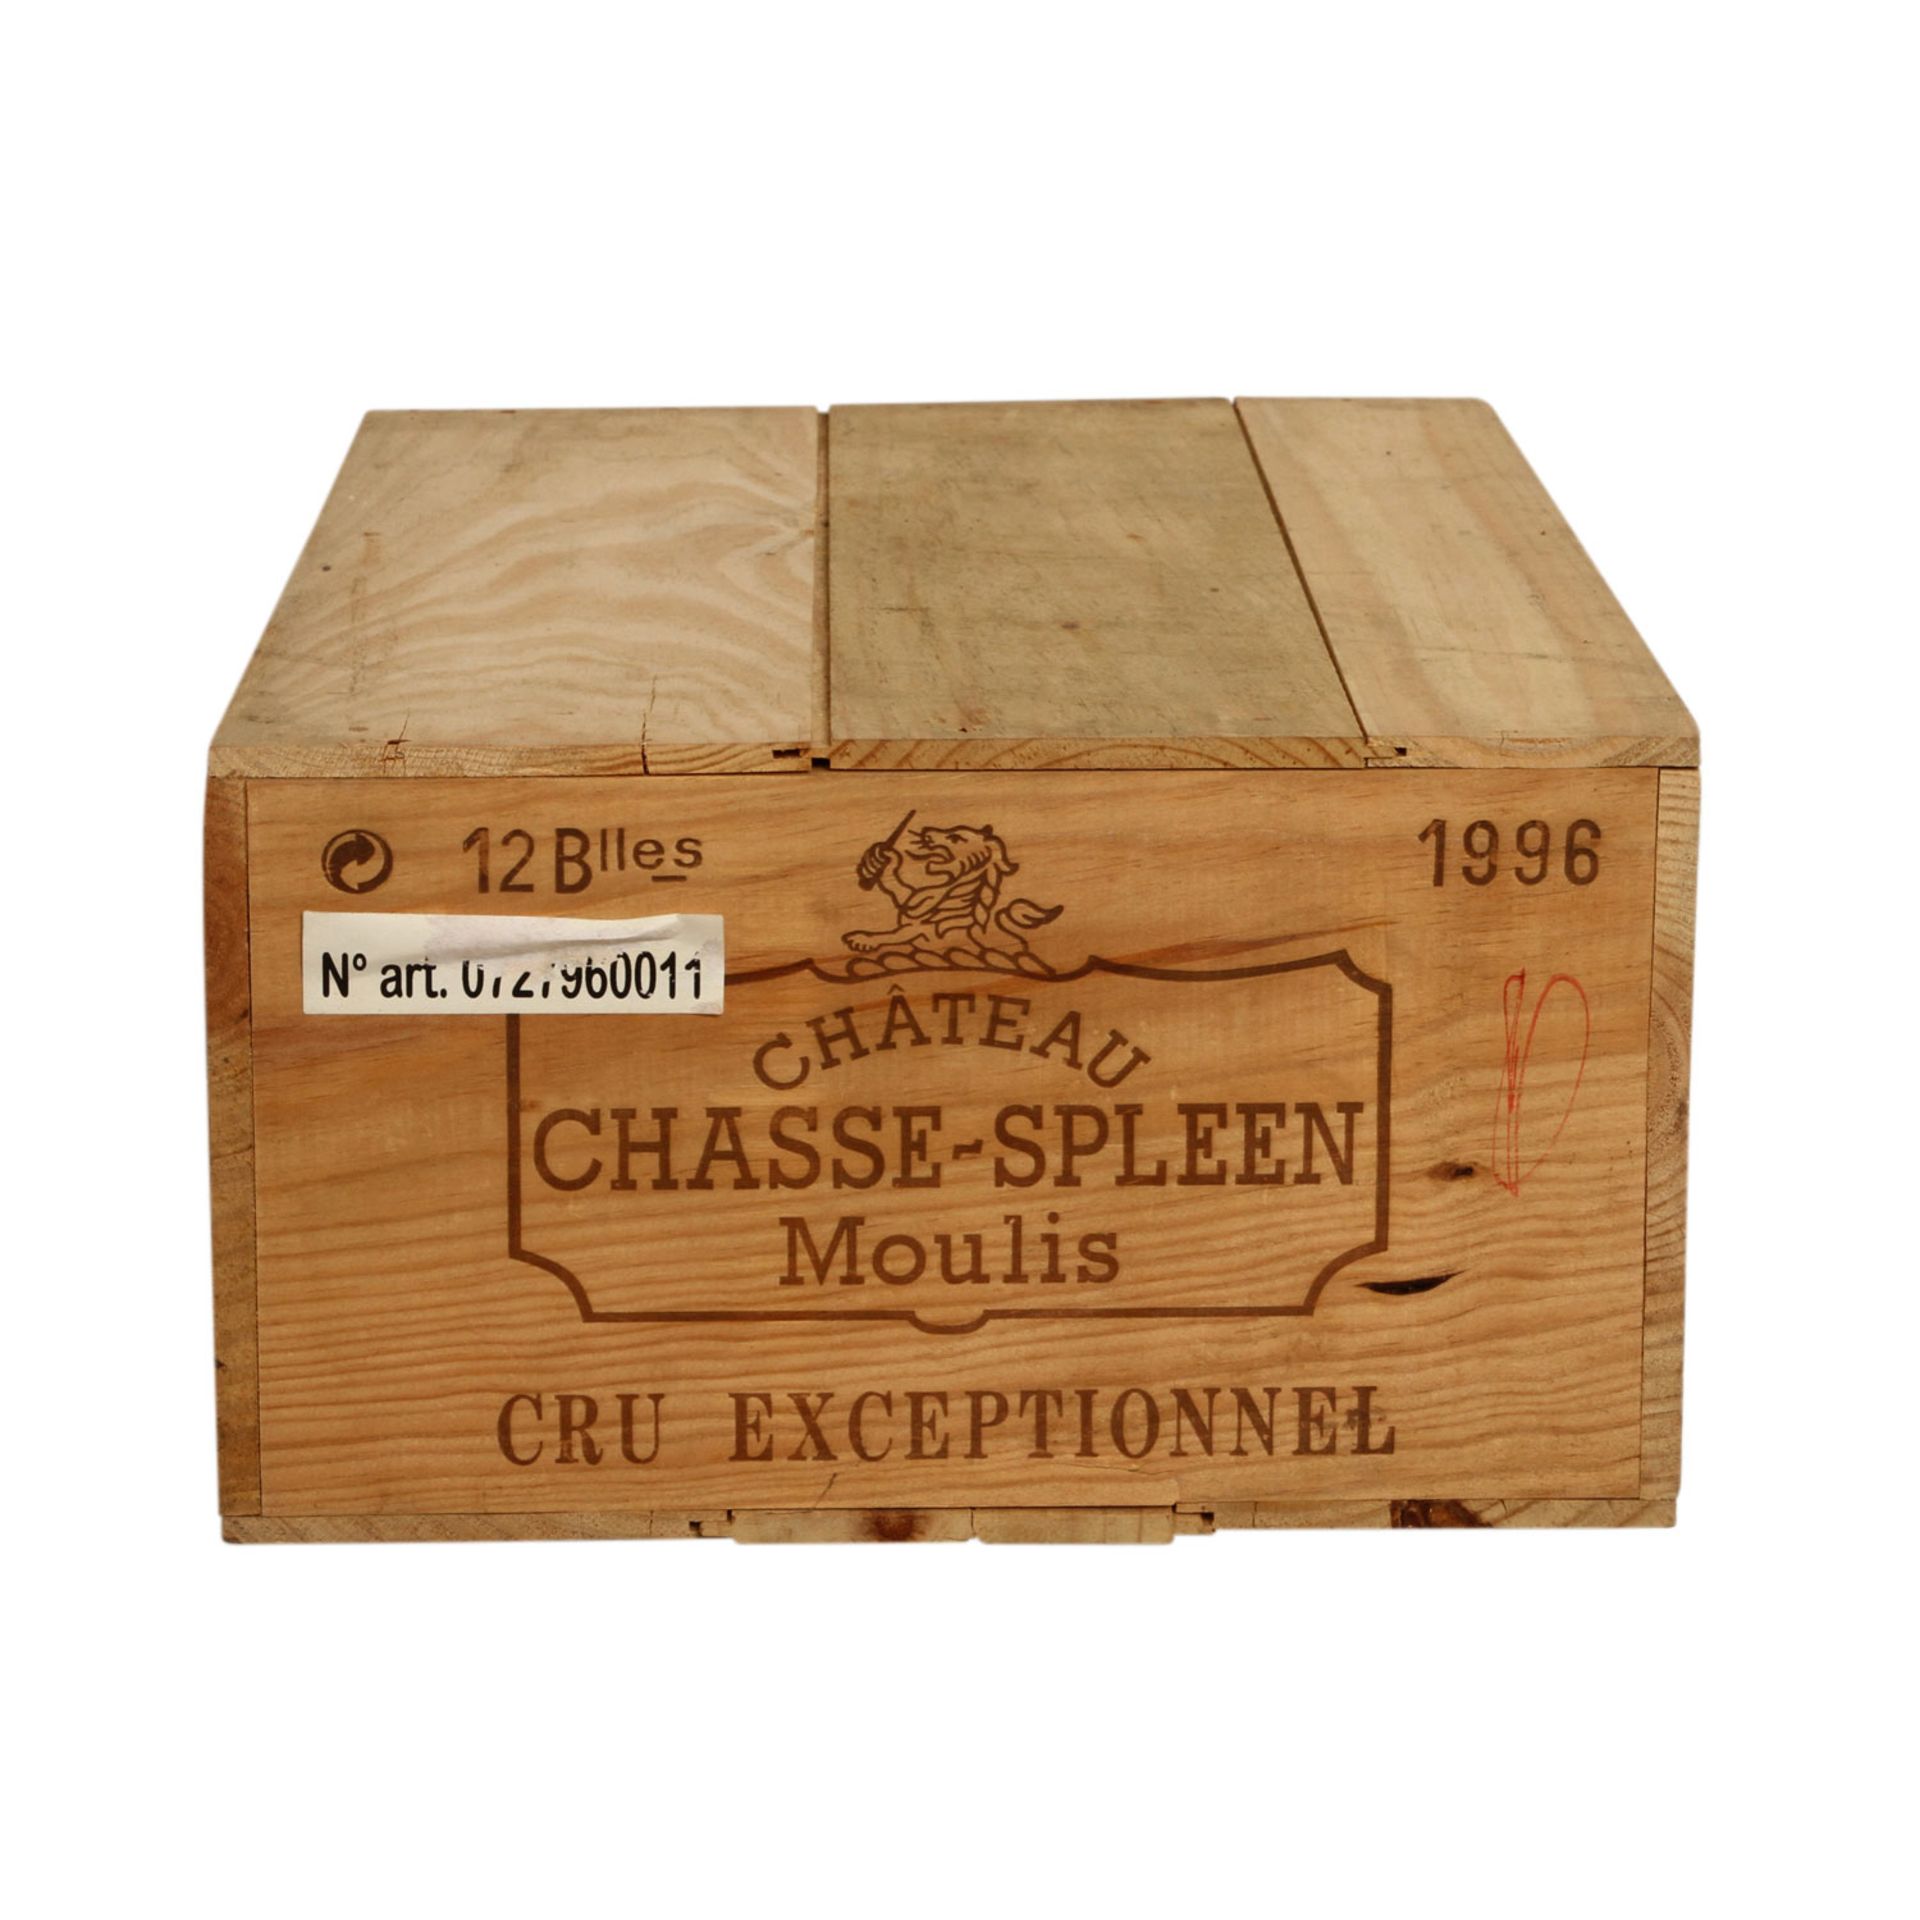 CHÂTEAU CHASSE SPLEEN 12 Flaschen in Original Holzkiste, 1996Moulis-en-Medoc, Frankreich, - Bild 2 aus 2